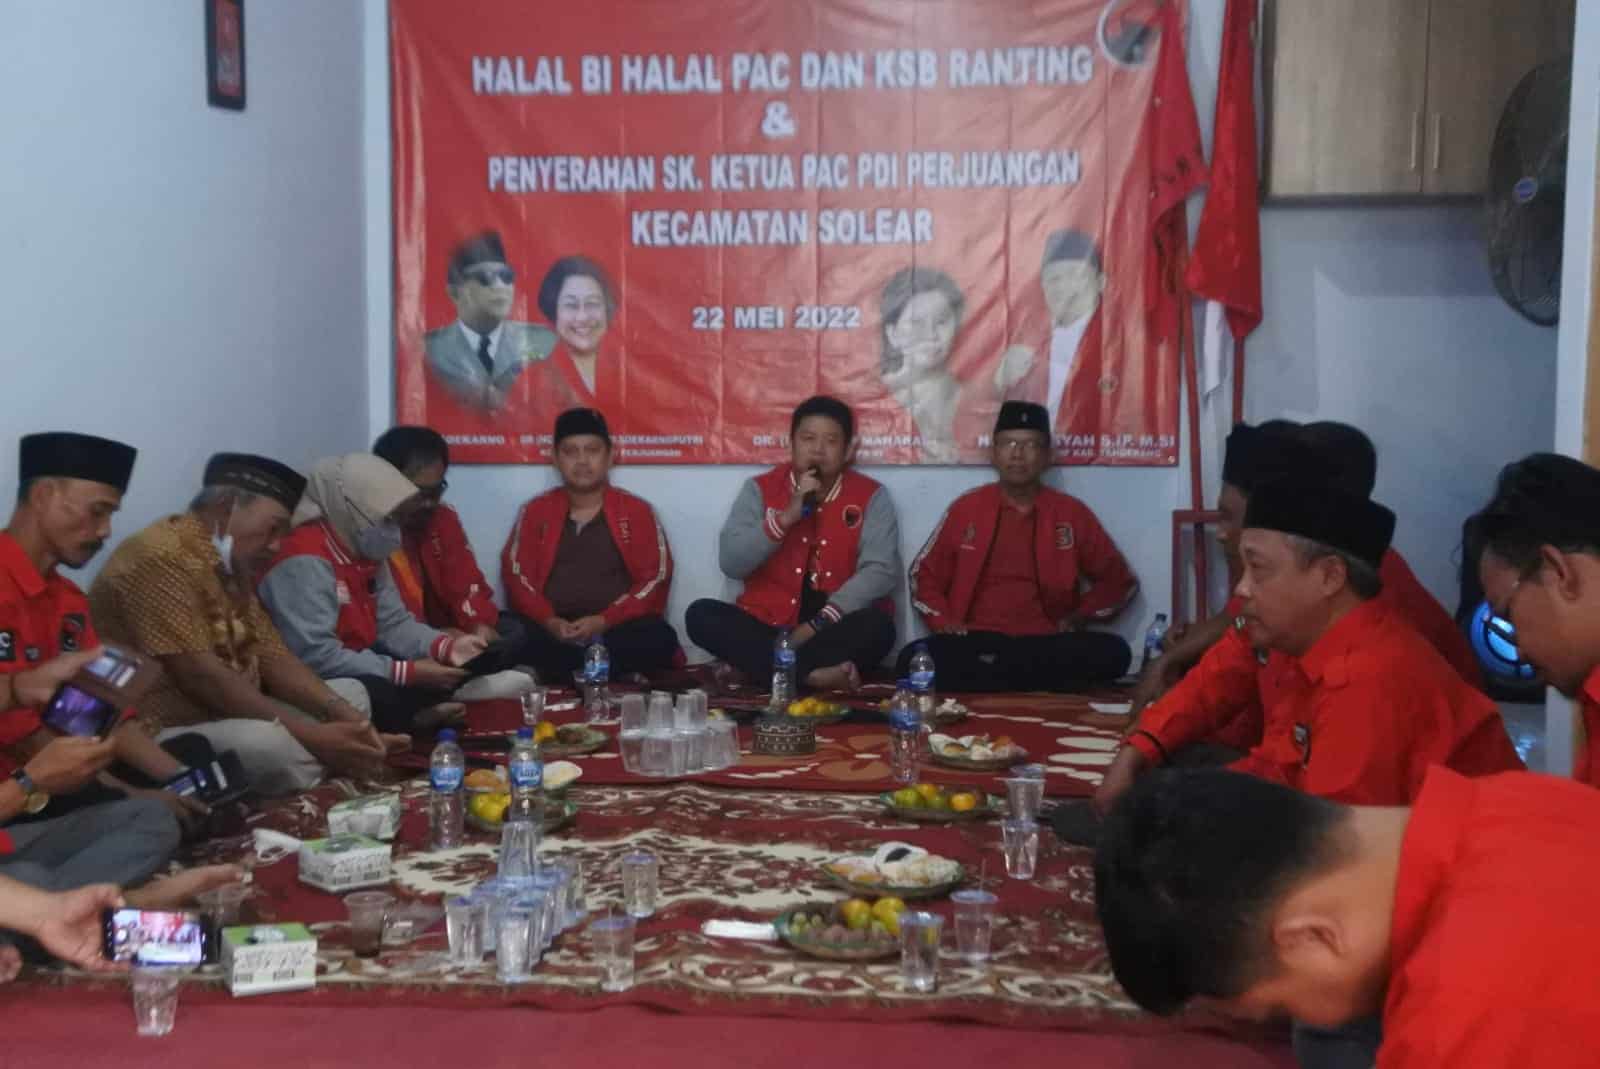 Tampak Irvansyah saat memberikan sambutannya di kegiatan halal bihalal Pengurus PAC ranting Kecamatan Solear.